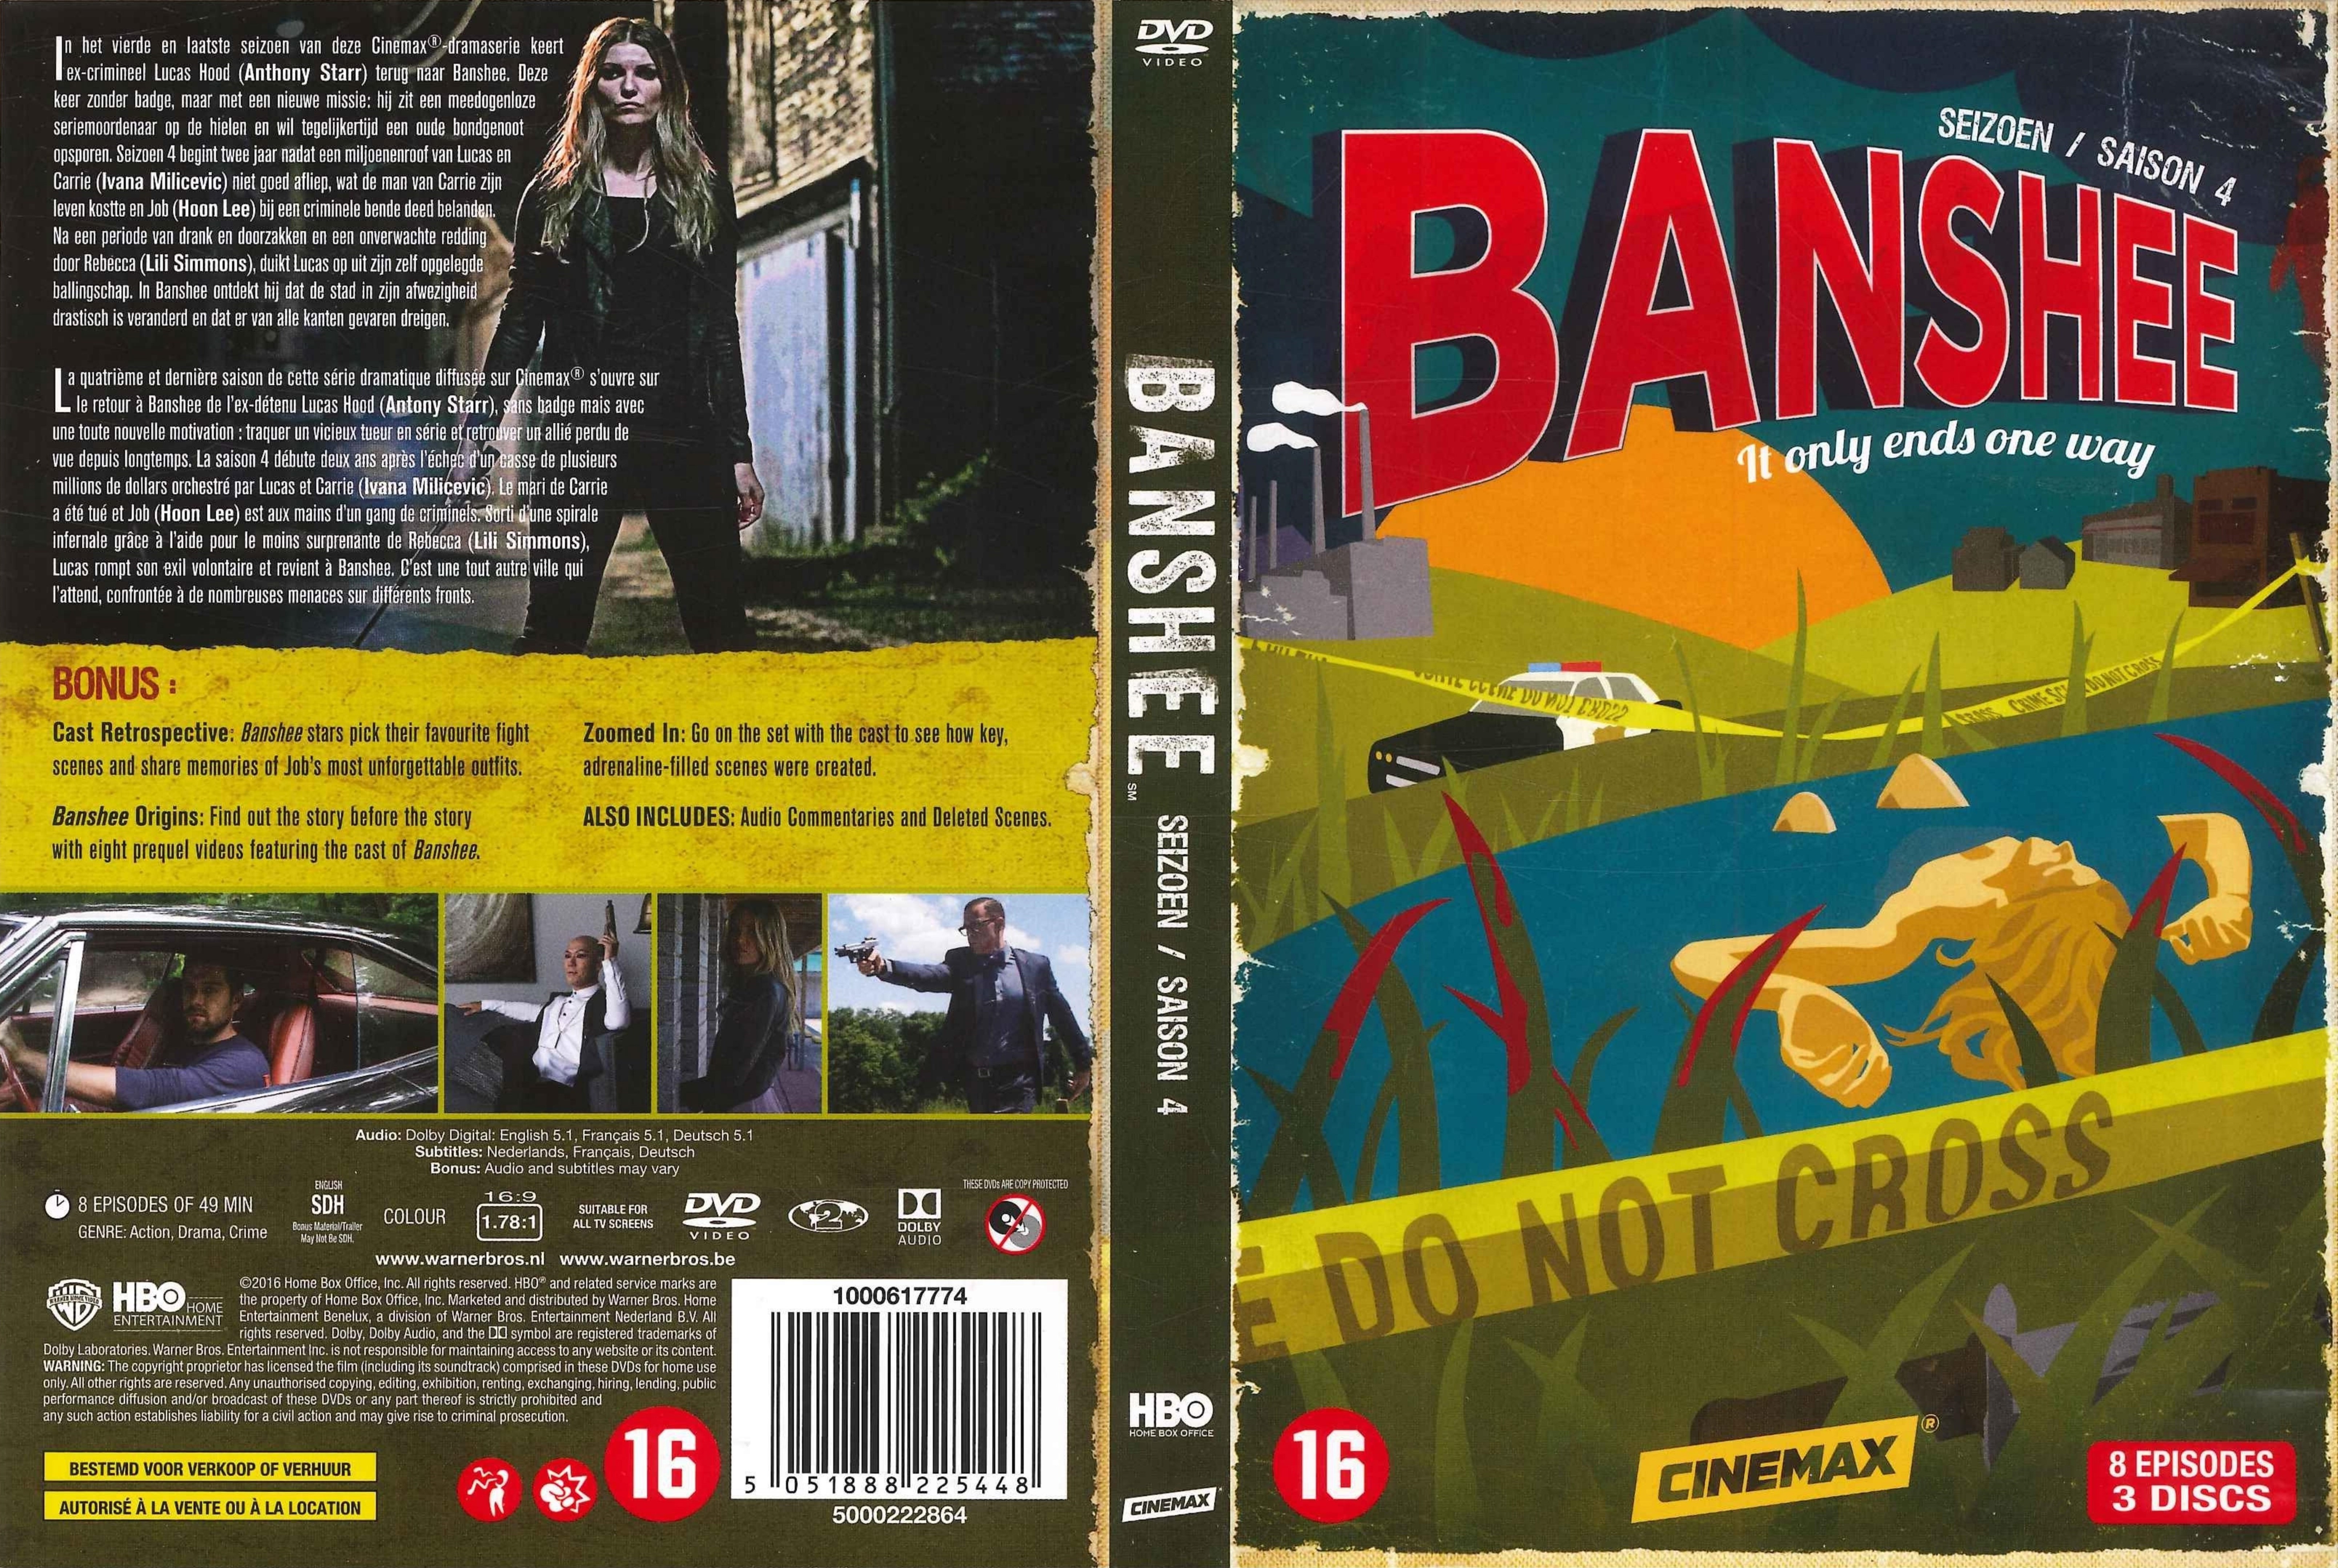 Jaquette DVD Banshee Saison 4